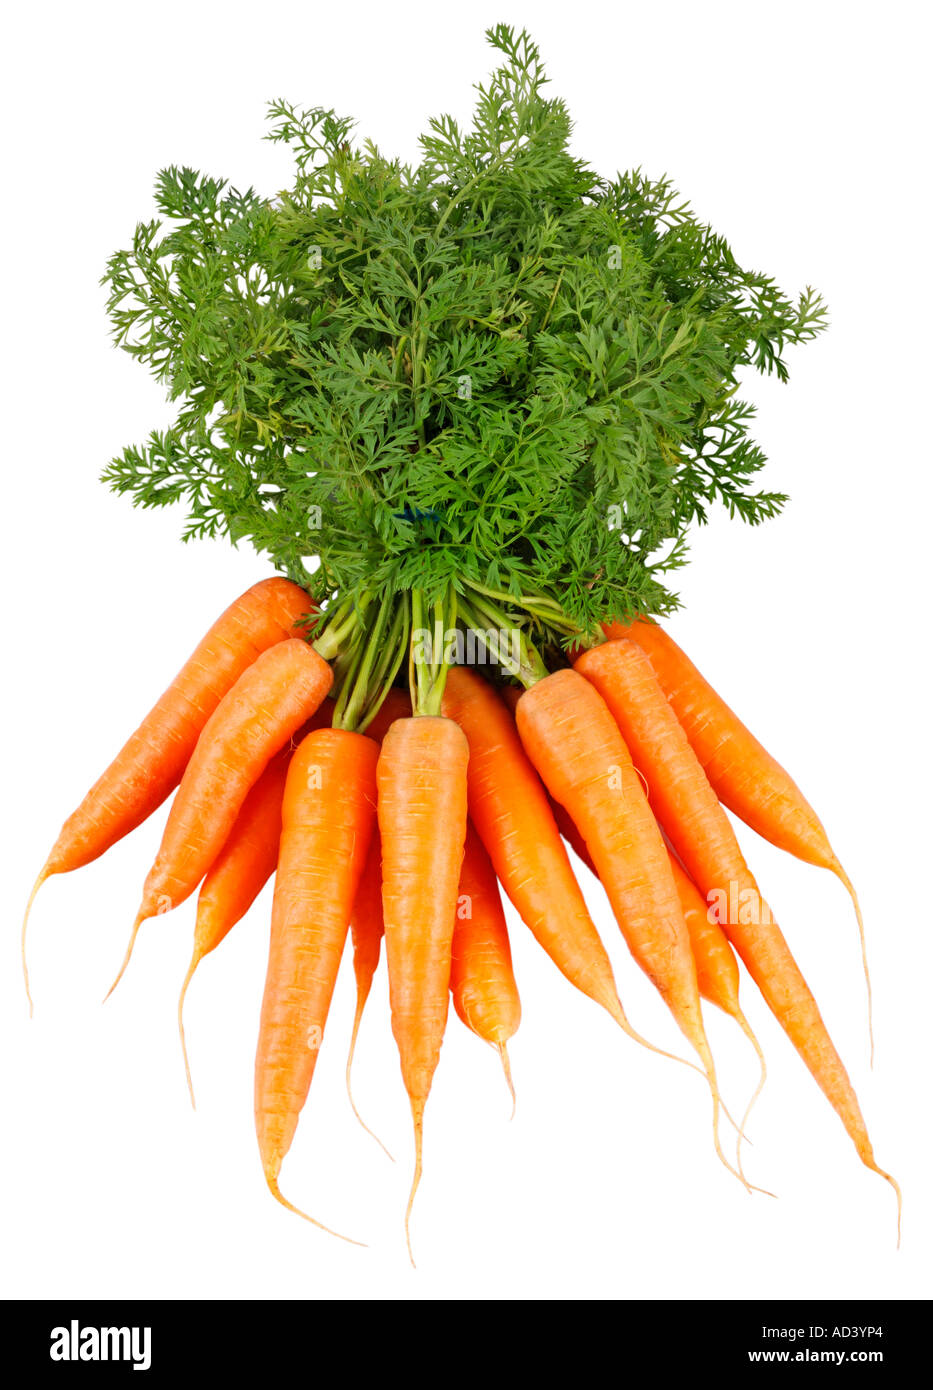 Botte de carottes fraîches CUT OUT Photo Stock - Alamy